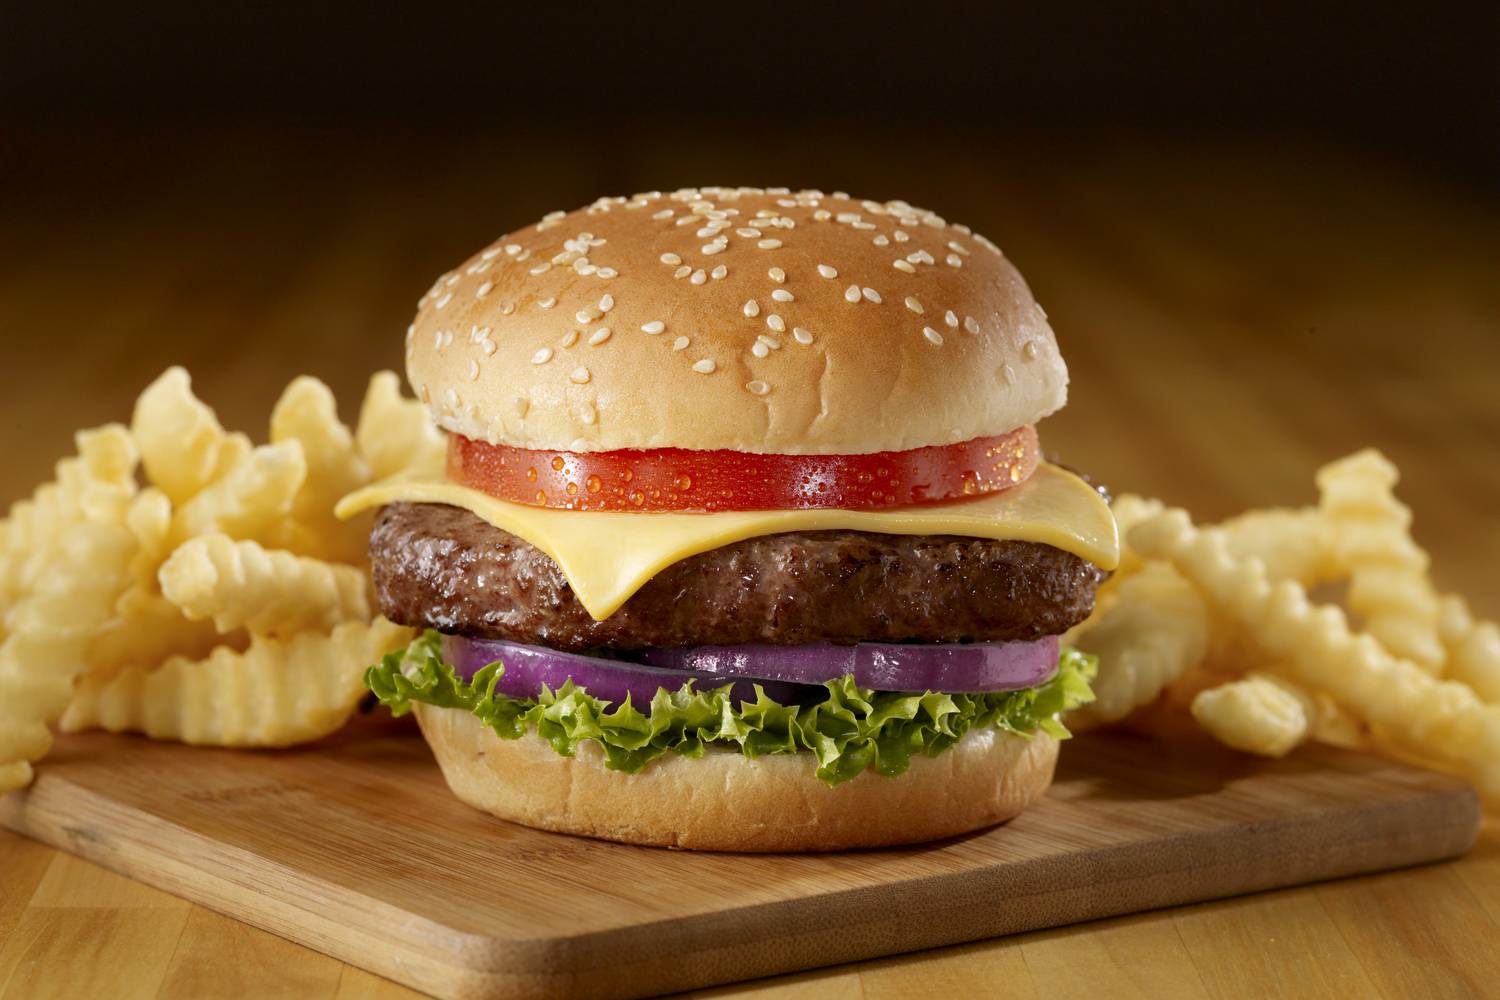 Ide tartoznak az olyan gyorsételek, mint a hamburgerek, amik általában magas telítettzsír- és kalóriatartalommal bírnak, és jelentős mennyiségű feldolgozott szénhidrát található bennük, melyek károsan hatnak az egészségre.